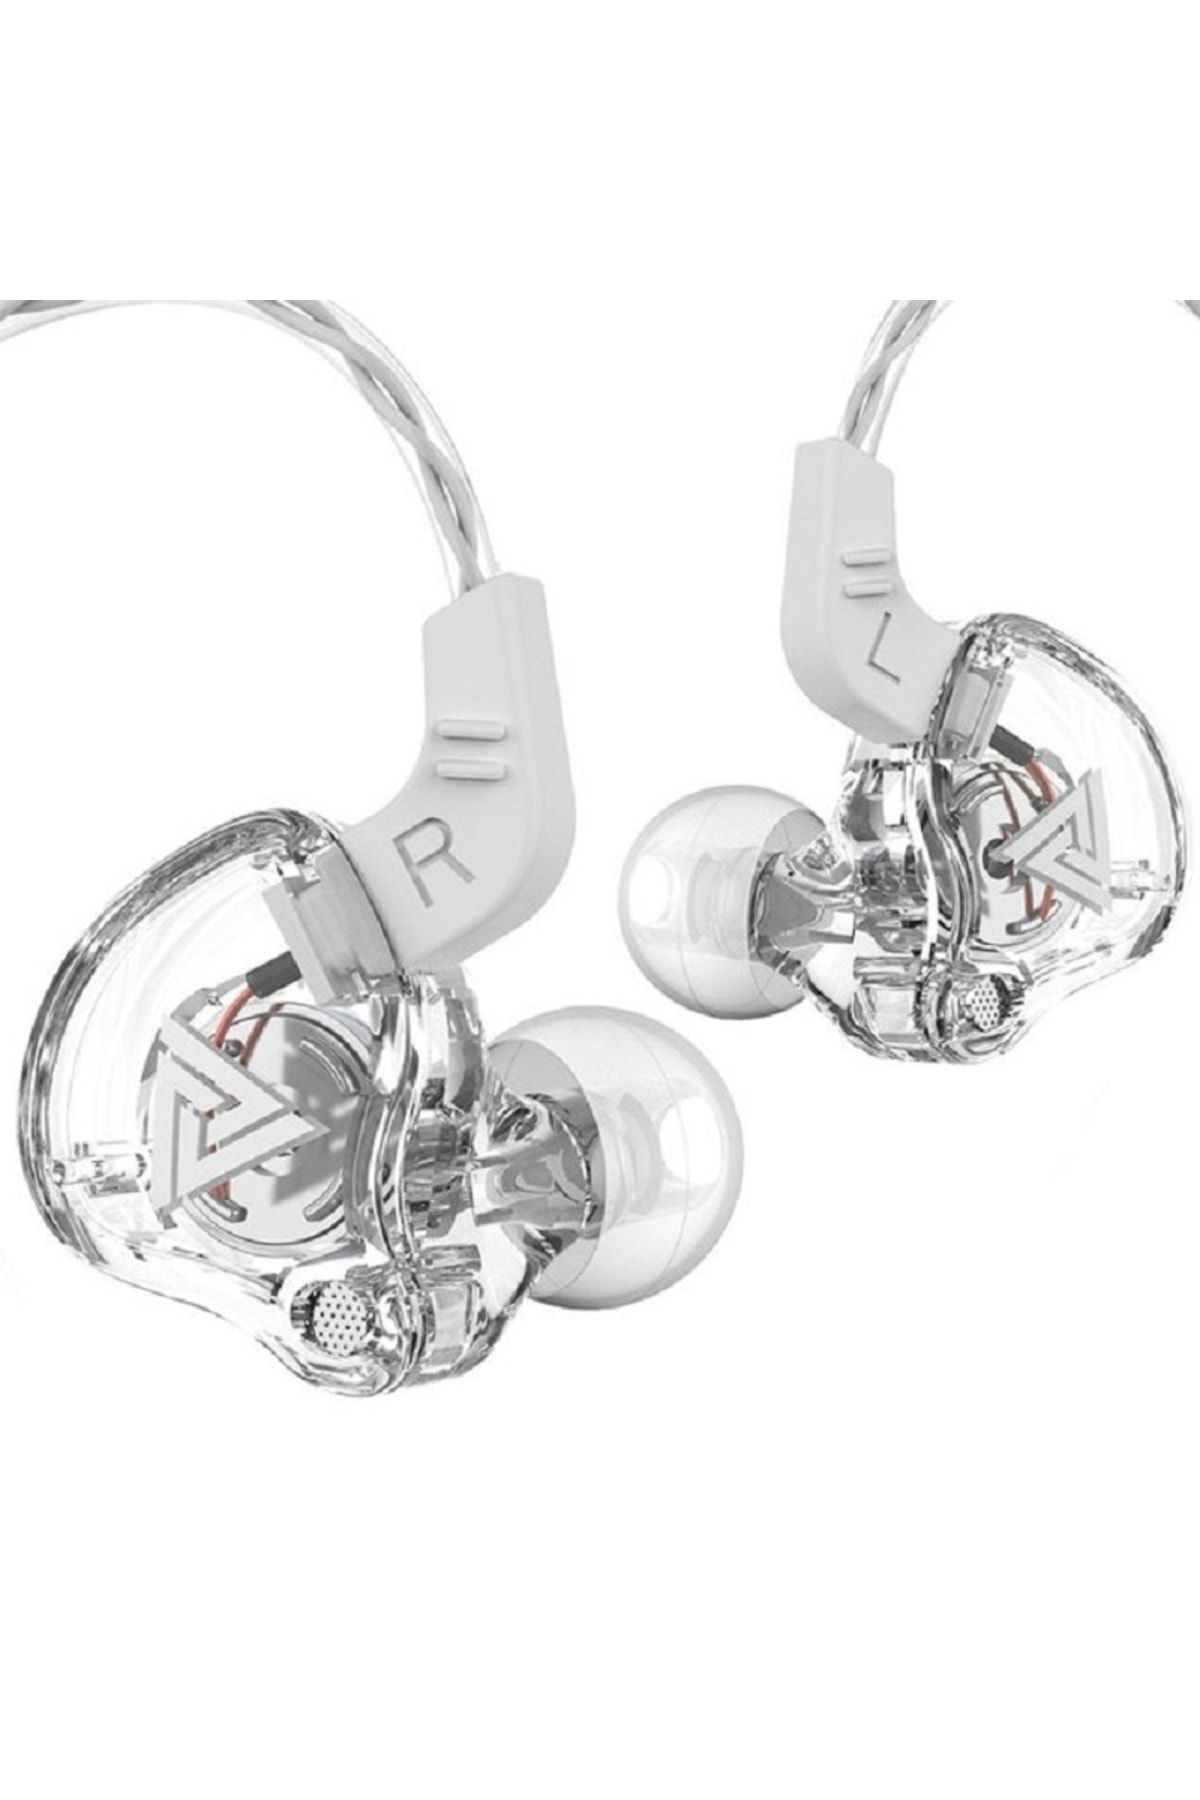 QKZ Hi-res Audio Kablolu Kulaklık Hifi Spor Kulaklıkları - Mikrofonlu Kulaklık Oyun -telefon Bass